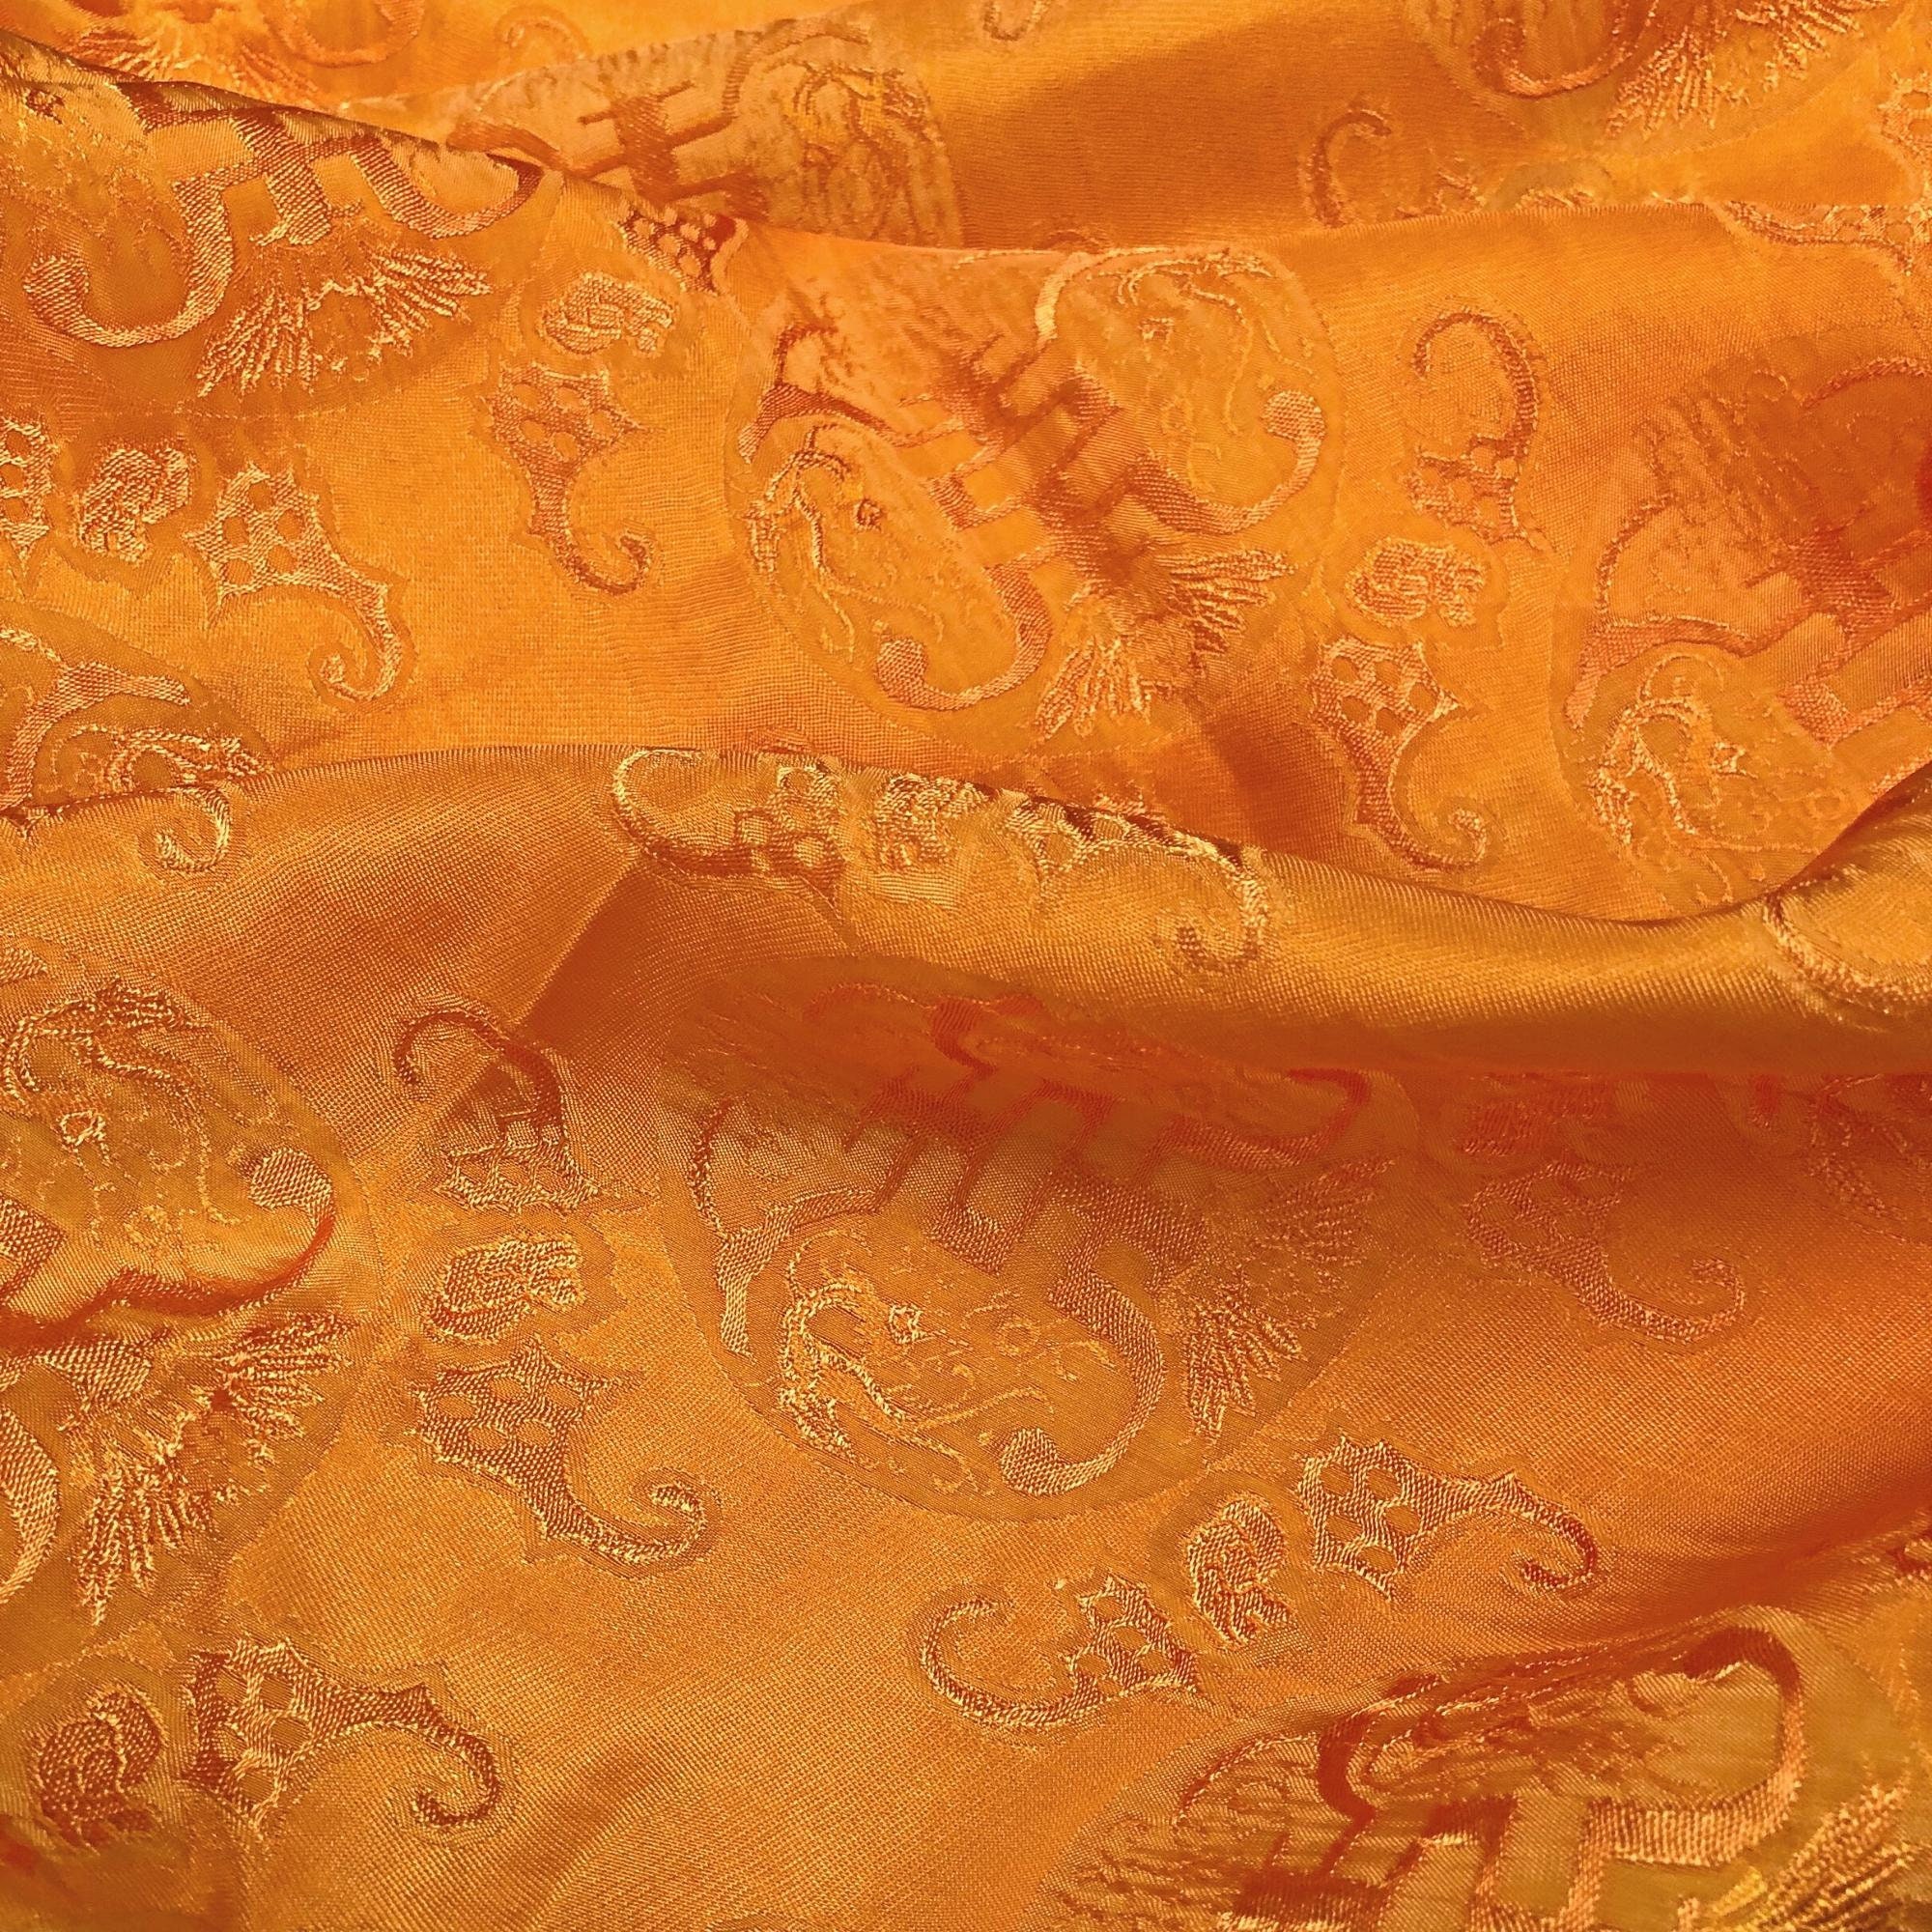 Vải Lụa Tơ Tằm thọ dowimauf vàng cam, mềm#mượt#mịn, dệt thủ công, khổ vải 90cm